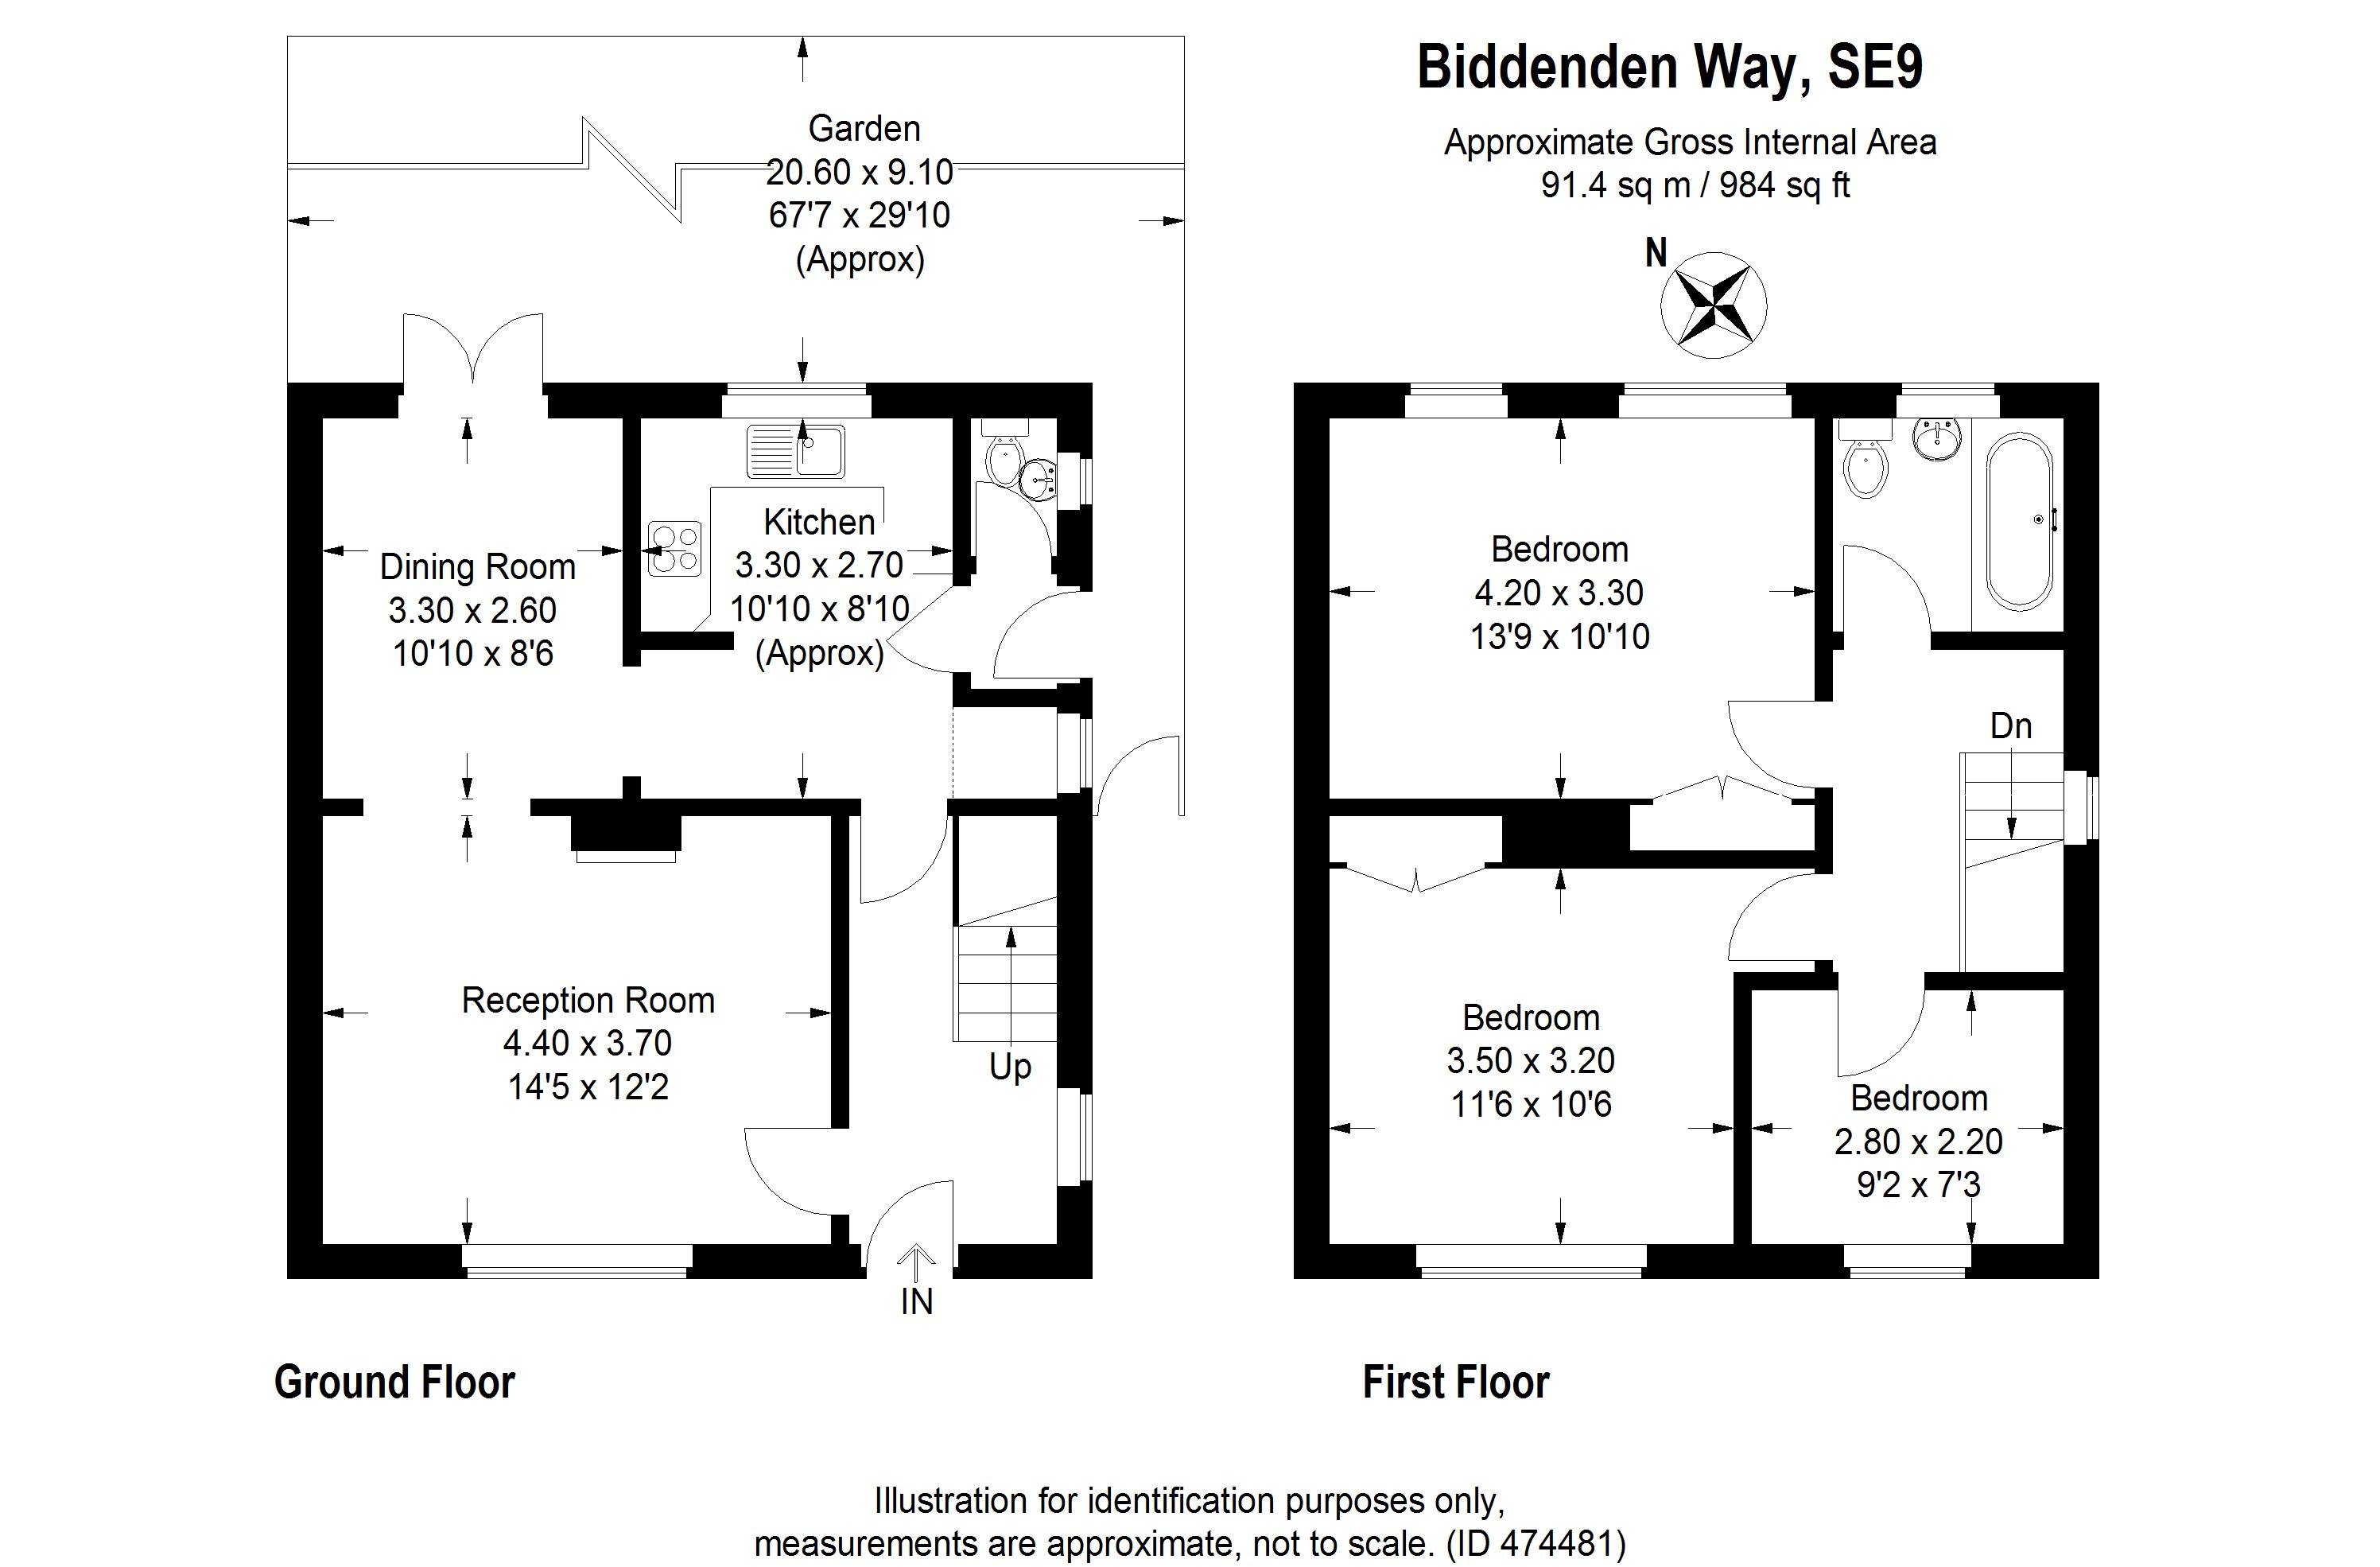 3 Bedrooms Semi-detached house to rent in Biddenden Way, London SE9